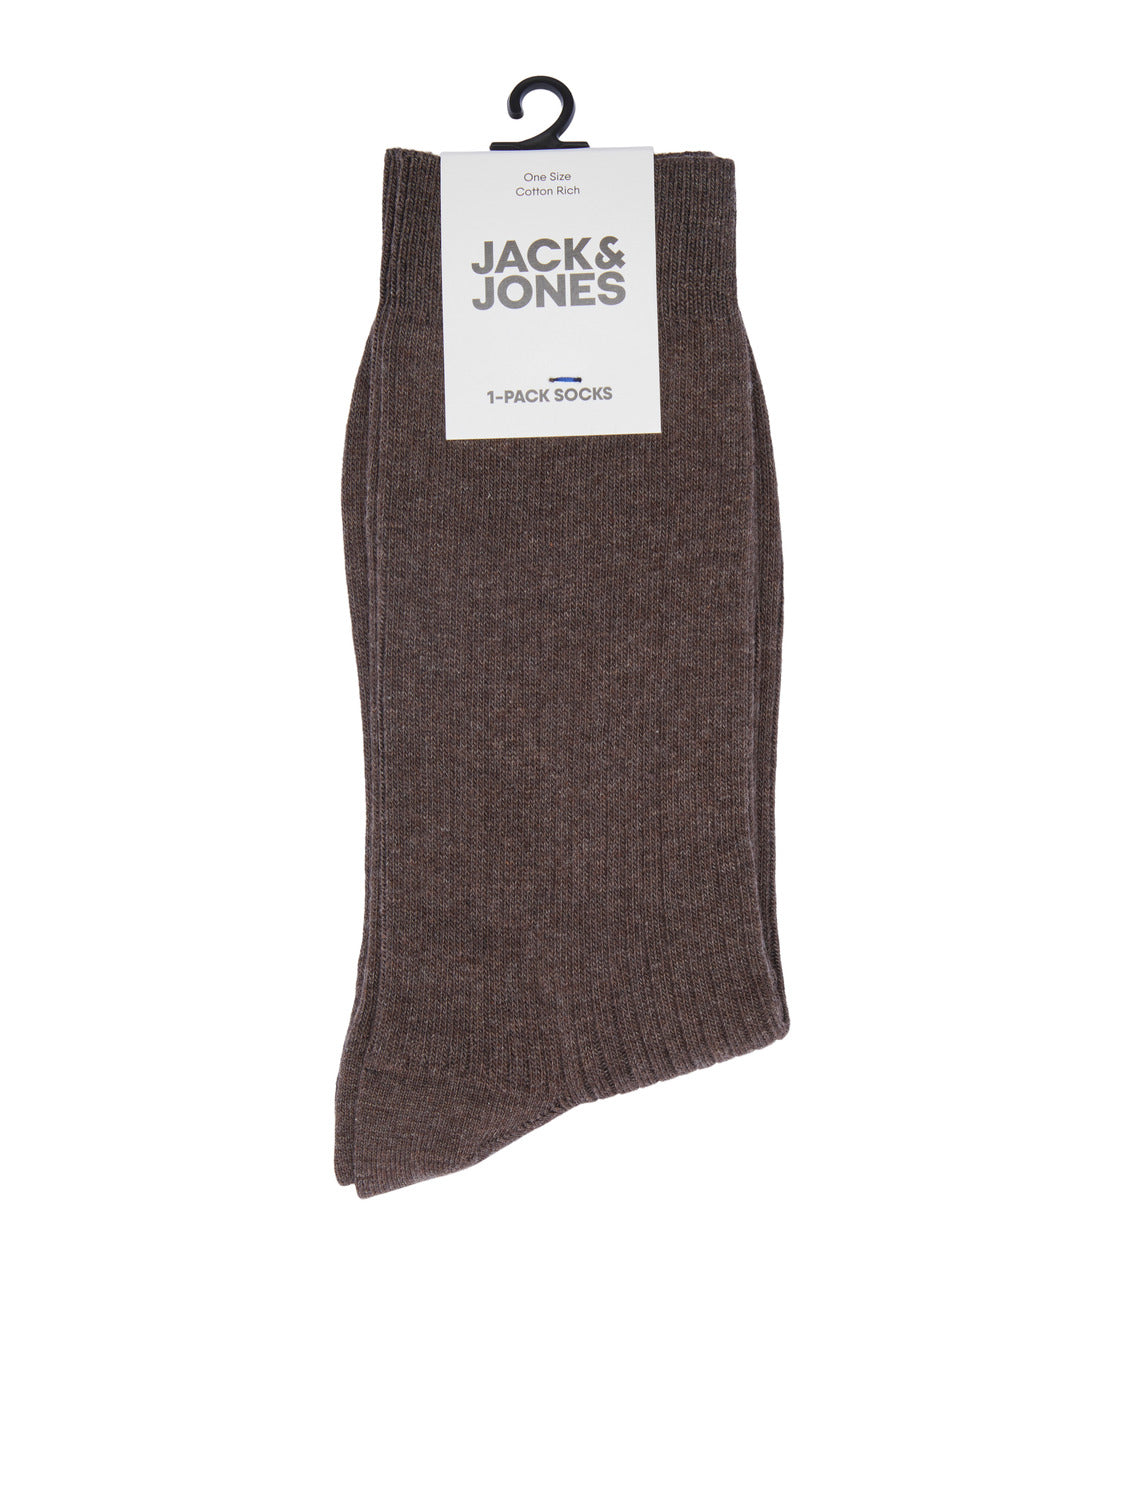 JAC Socks - Java